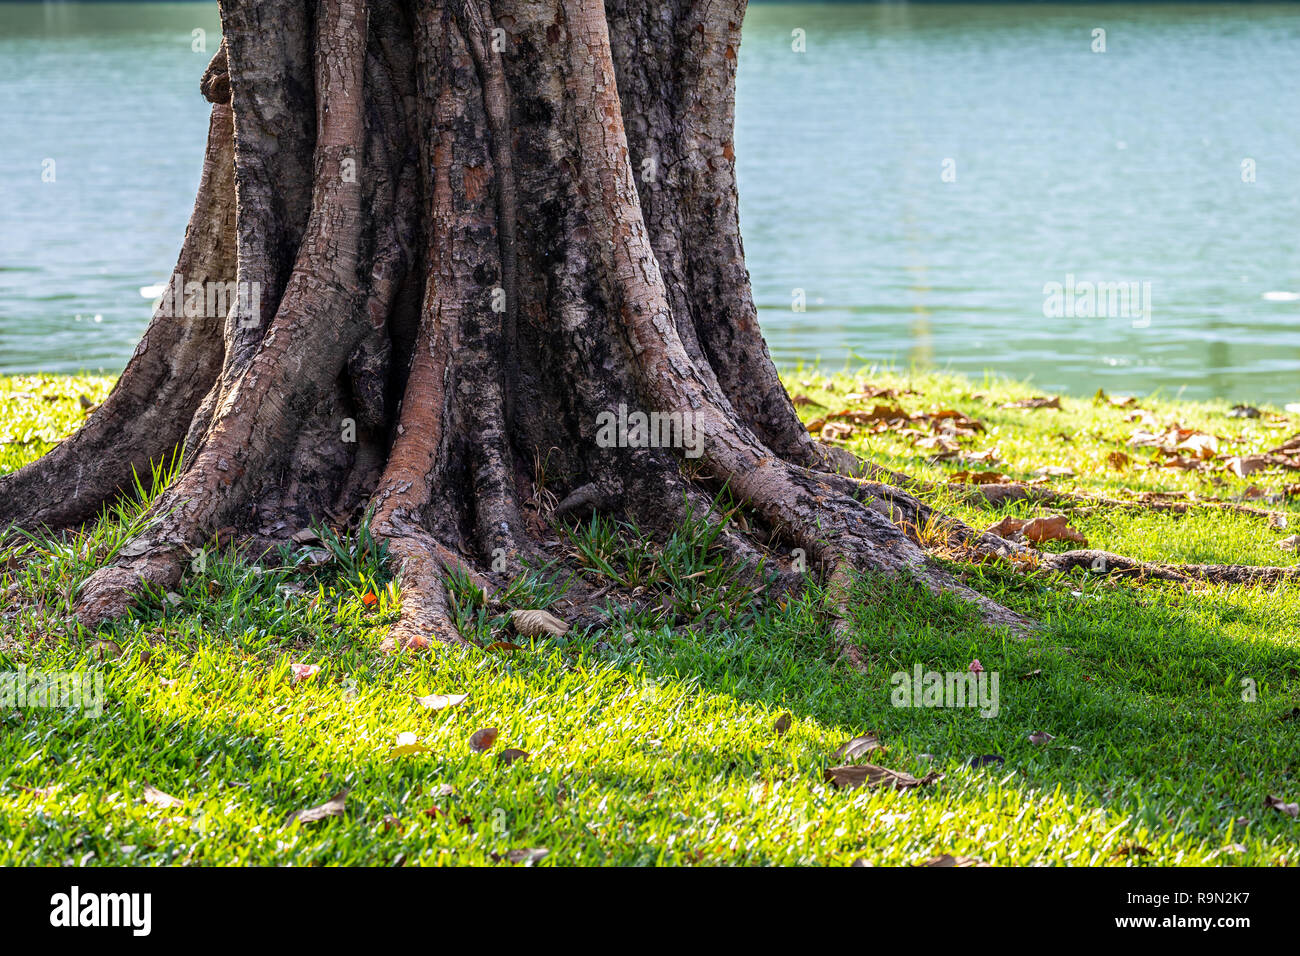 Bole und Wurzeln der großen alten Baum stand auf grasbewachsenen Boden in der Nähe von Teich. Stockfoto